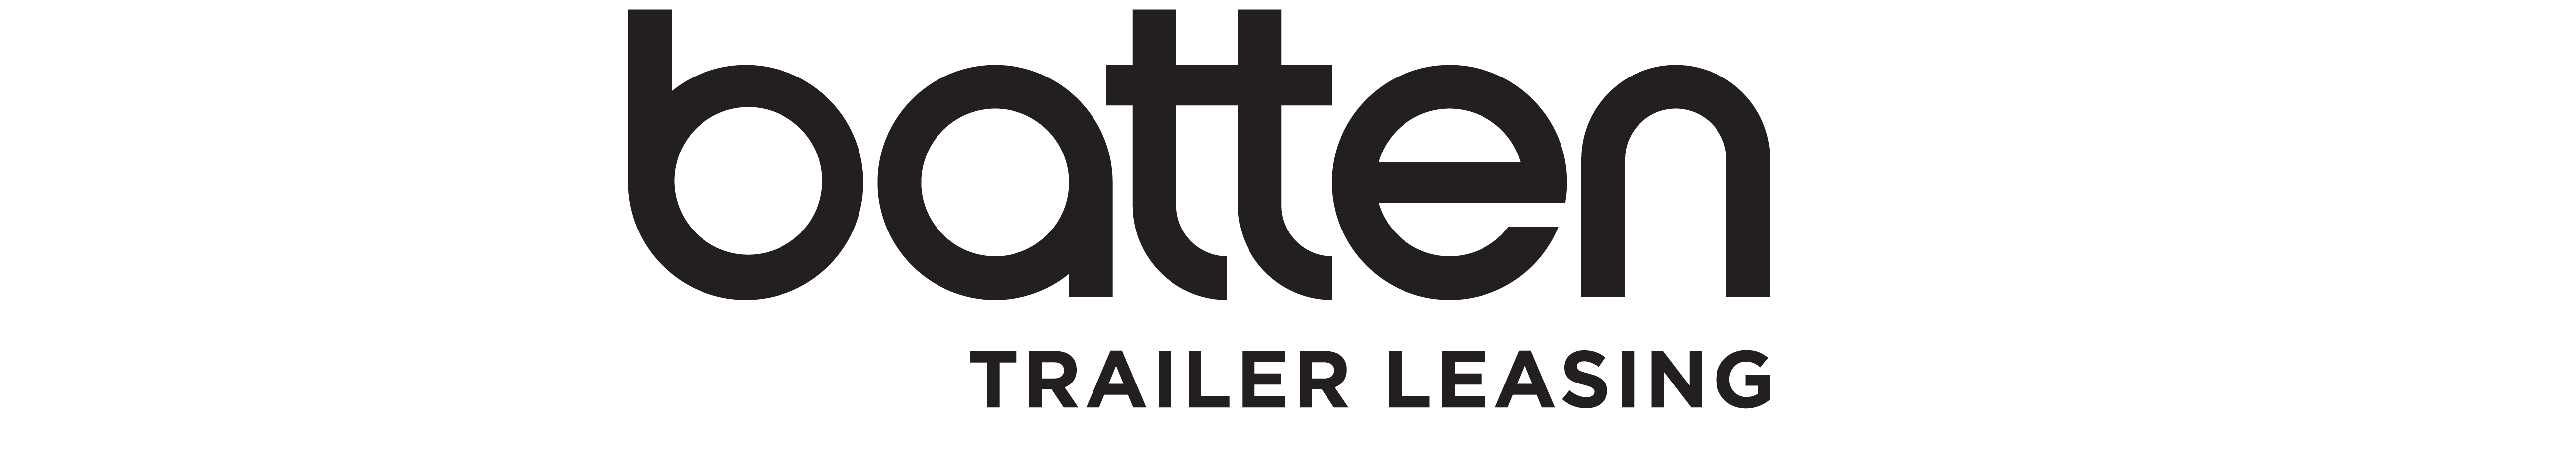 Batten Trailer Leasing